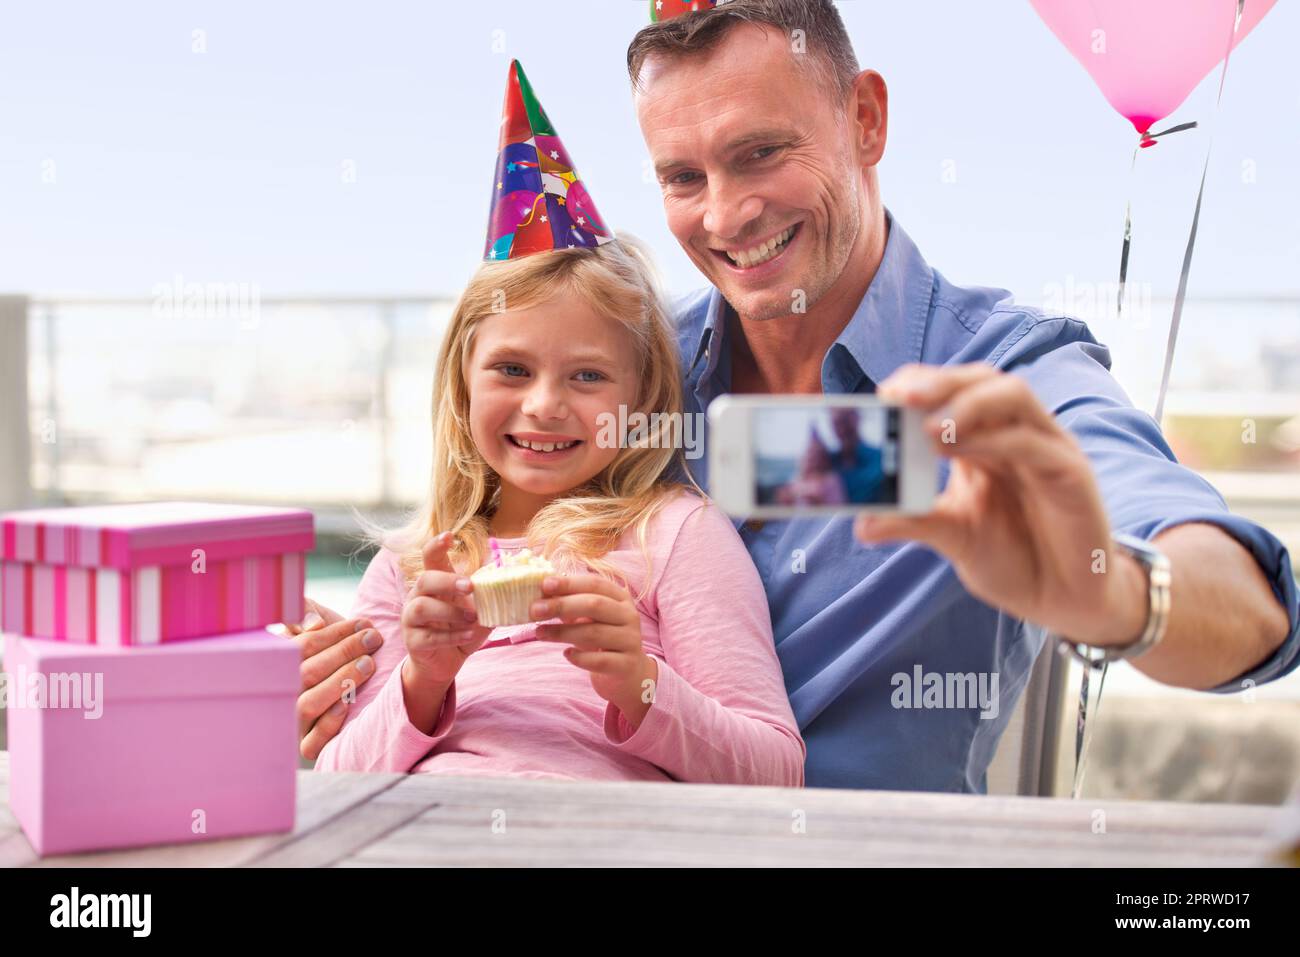 Grandir si vite. Un petit cliché d'un homme heureux prenant une photo de lui-même et de sa jeune fille à l'occasion de son anniversaire. Banque D'Images